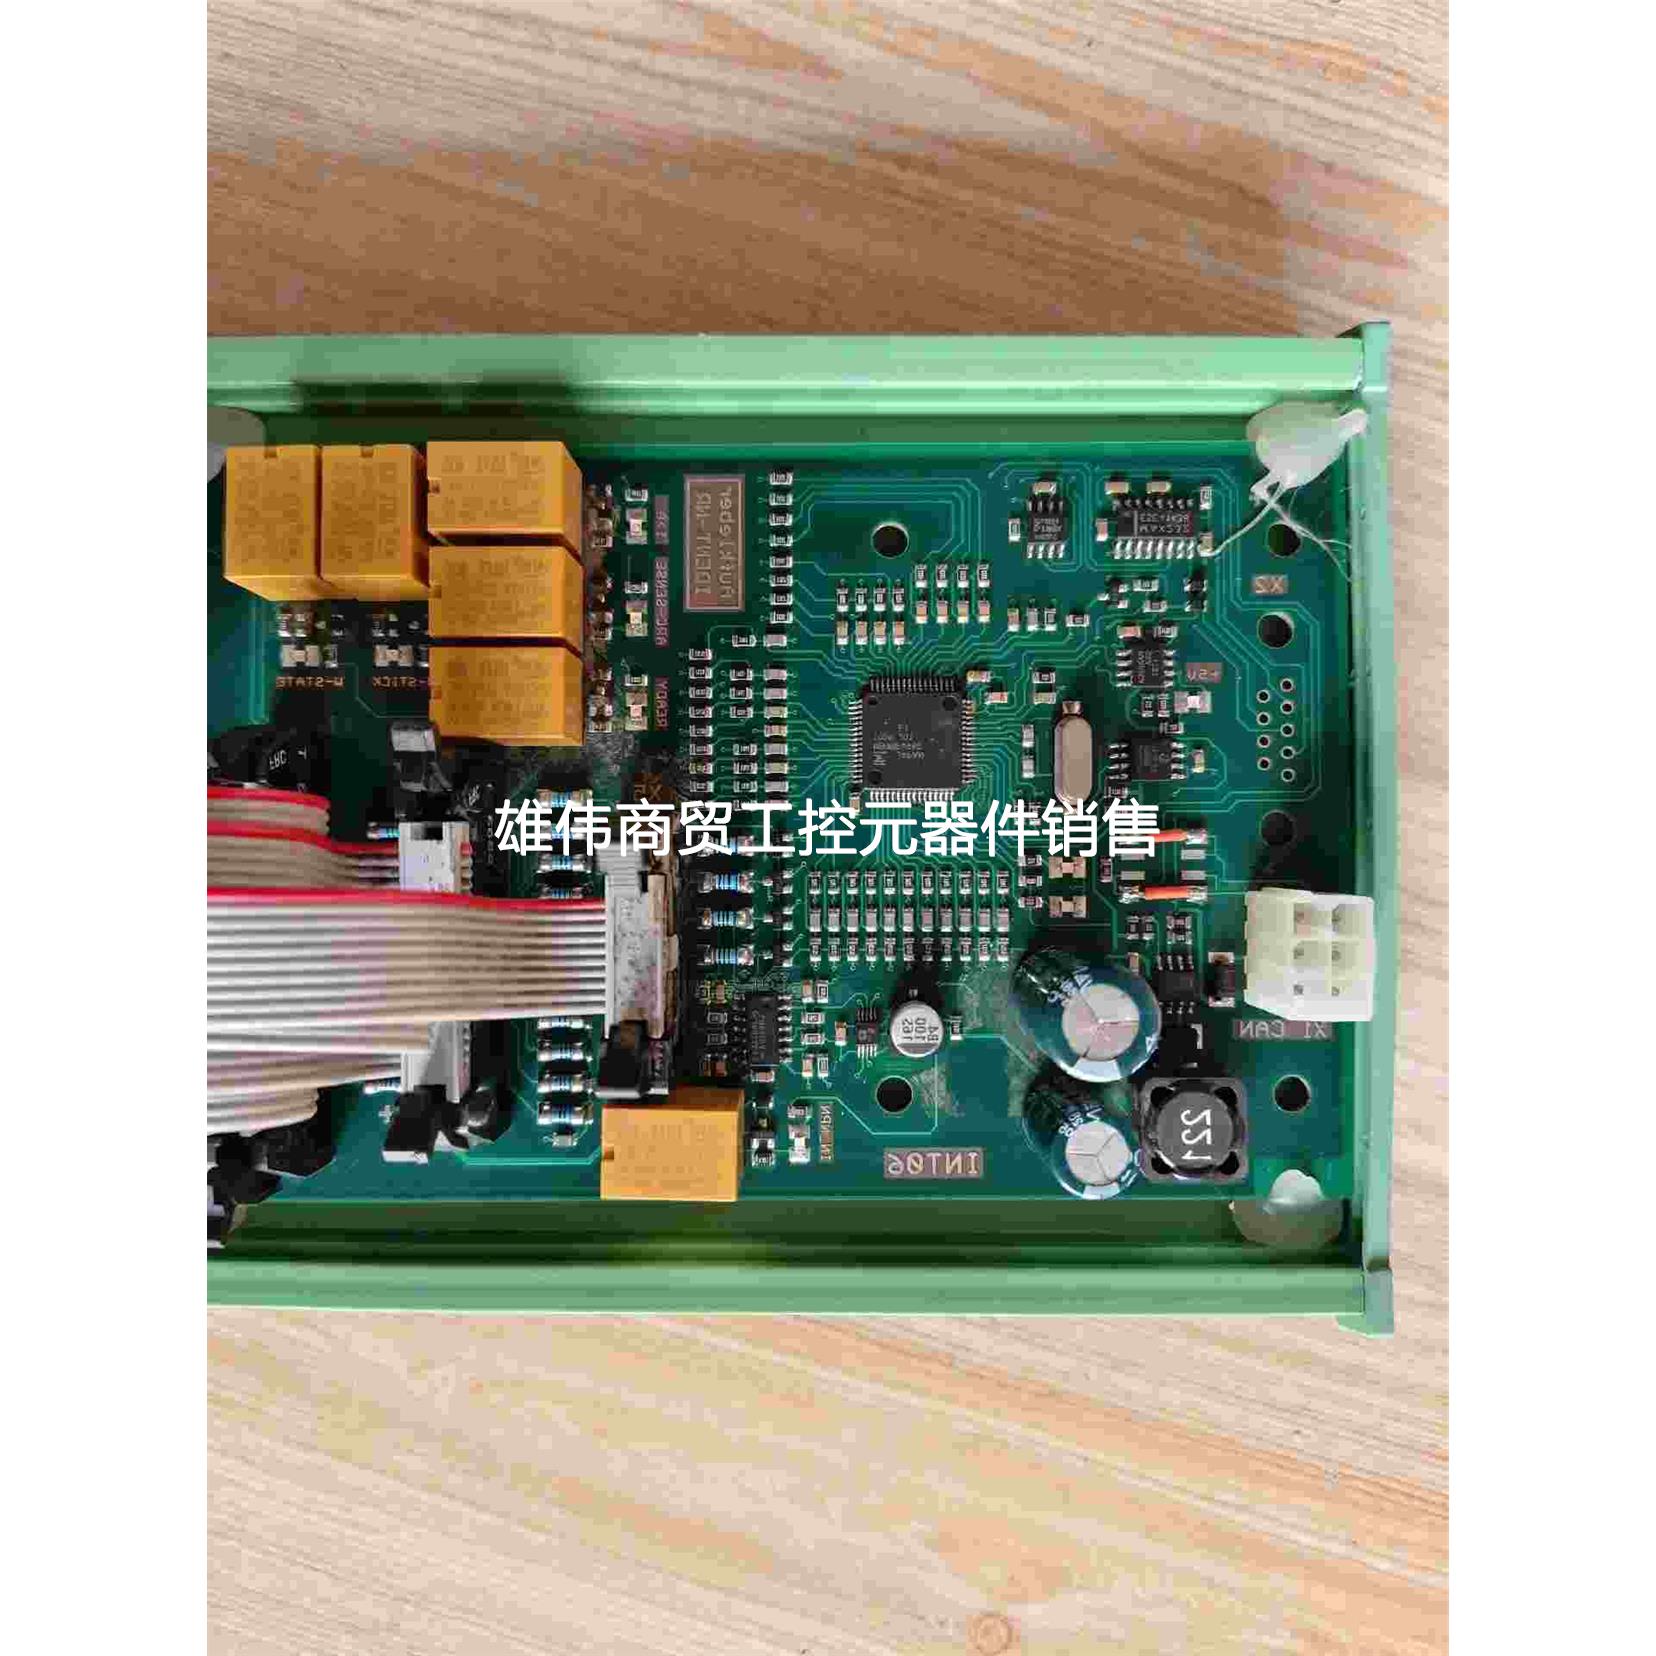 议价(请)拆机ABB驱动器控制器电路板,共3个,照片实物图具体型